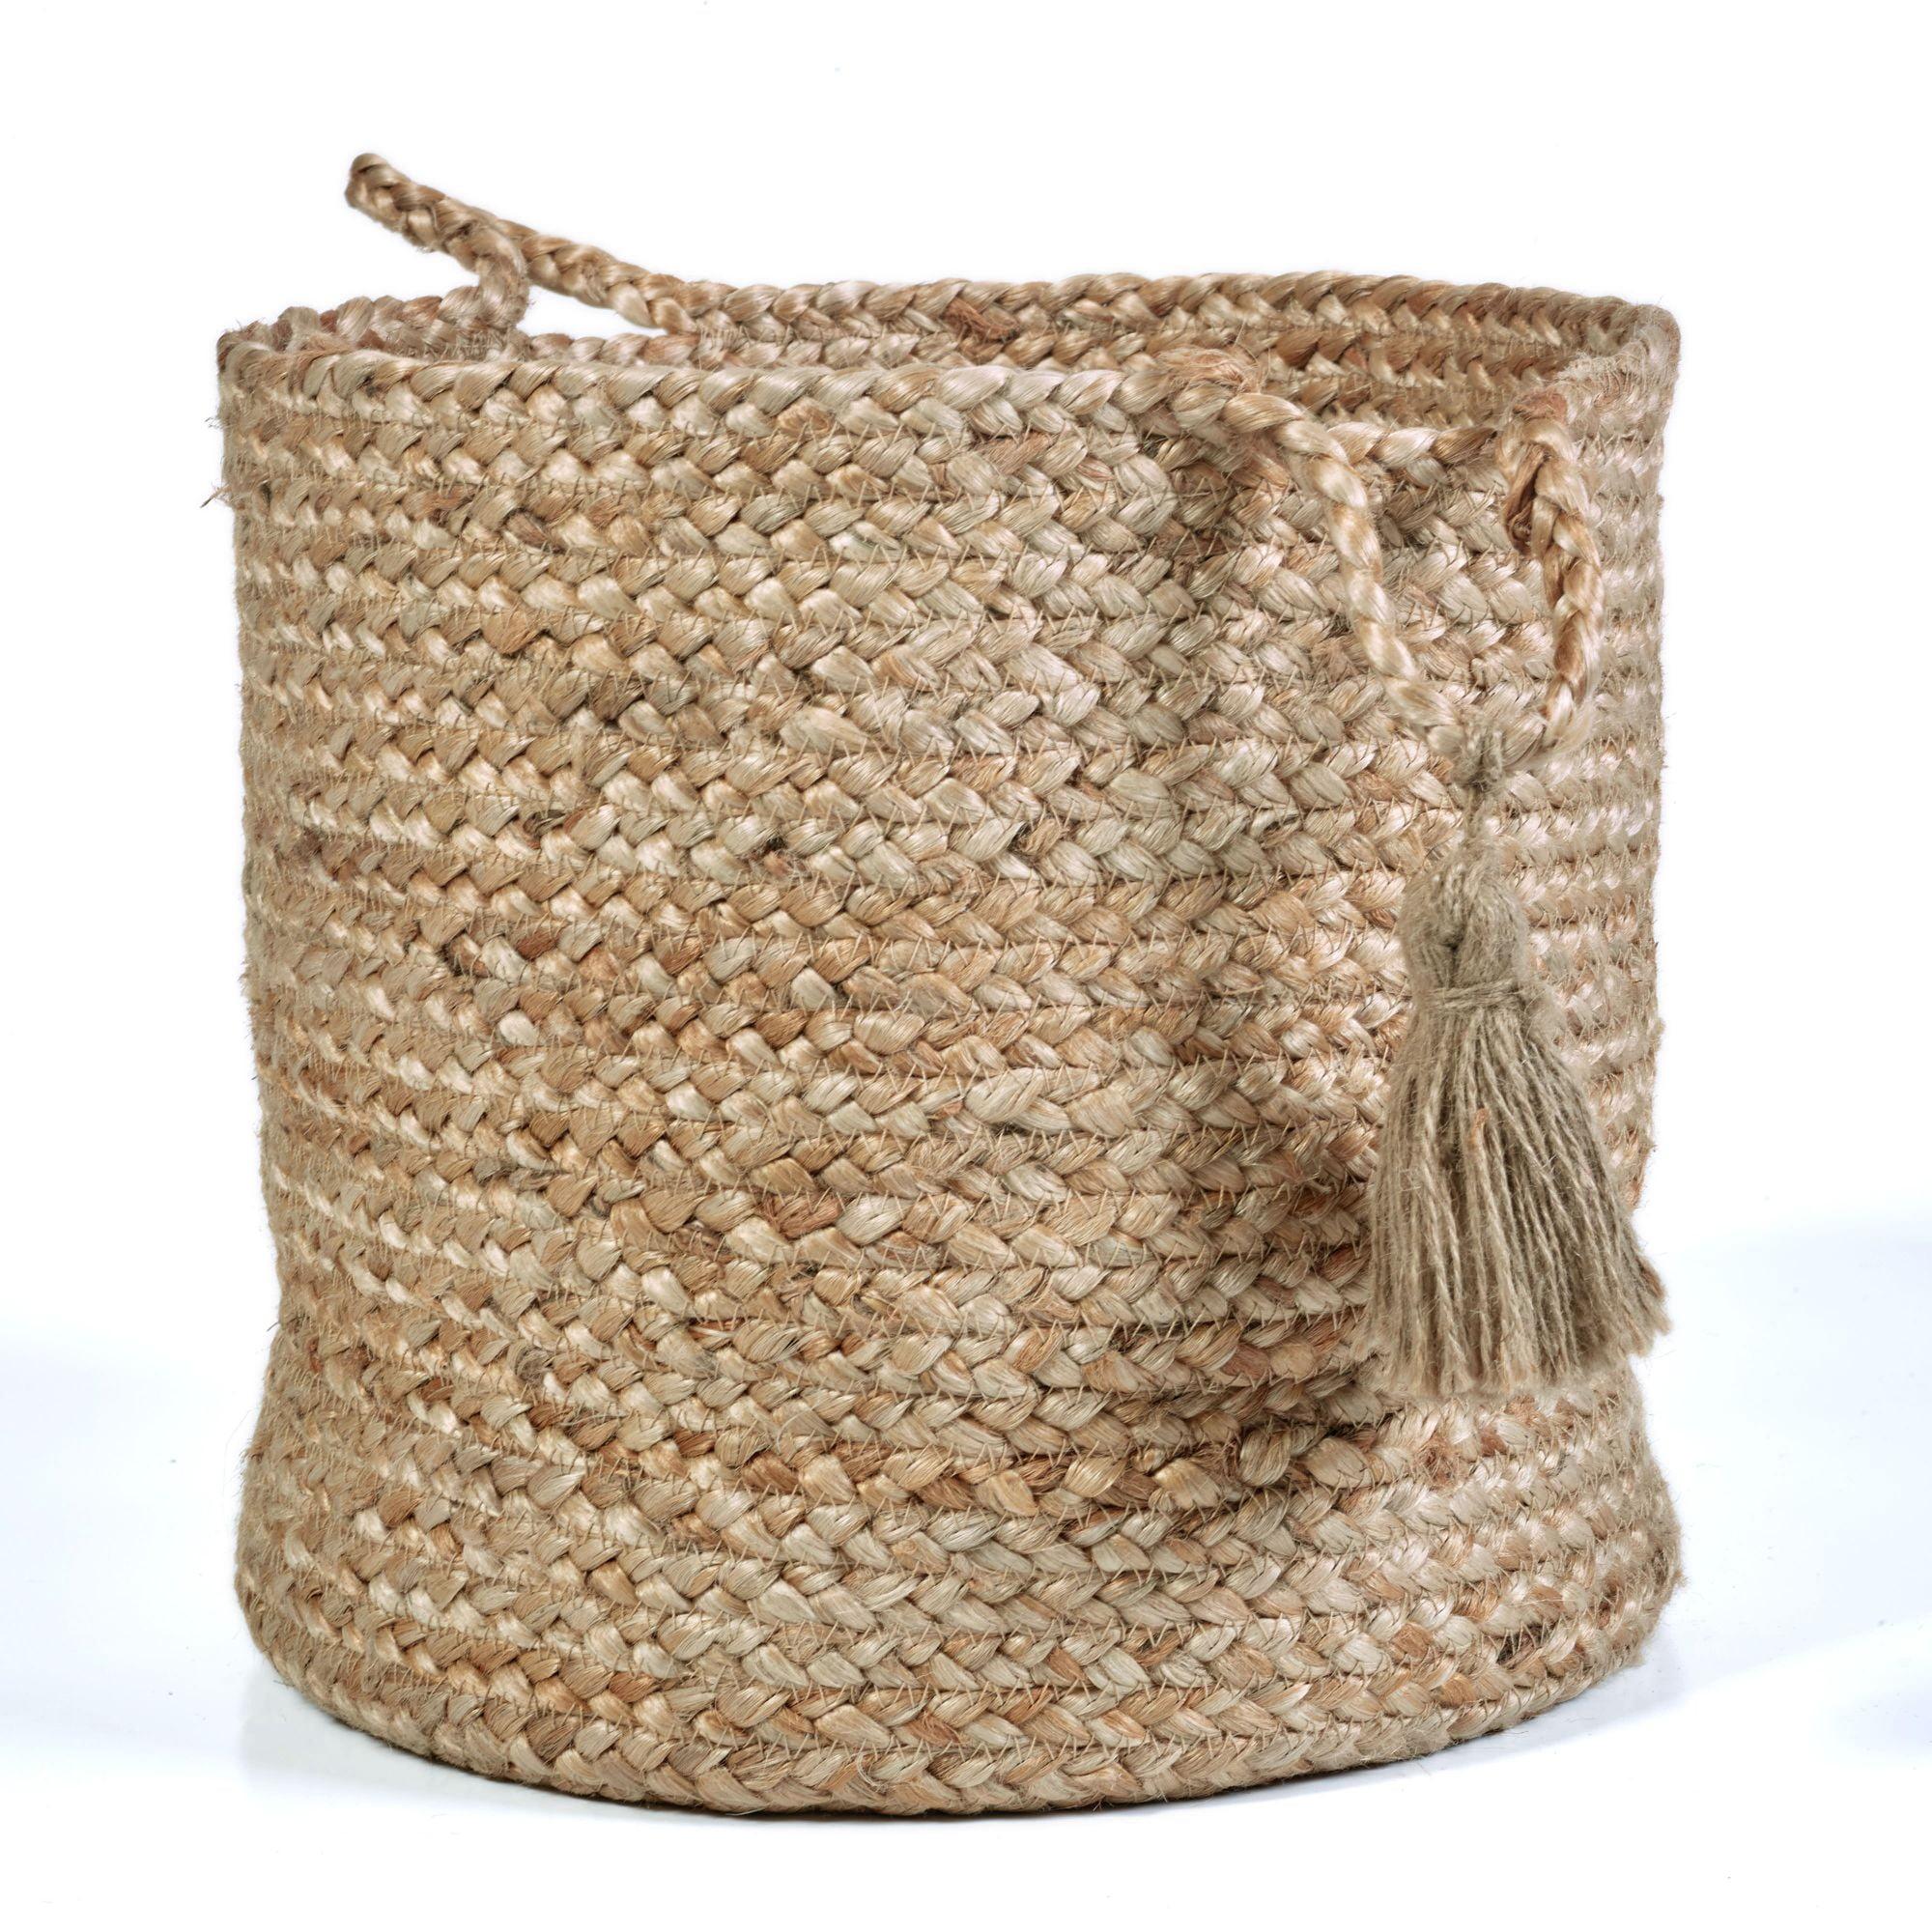 Handcrafted Jute Tassel Storage Basket 17" in Natural Brown